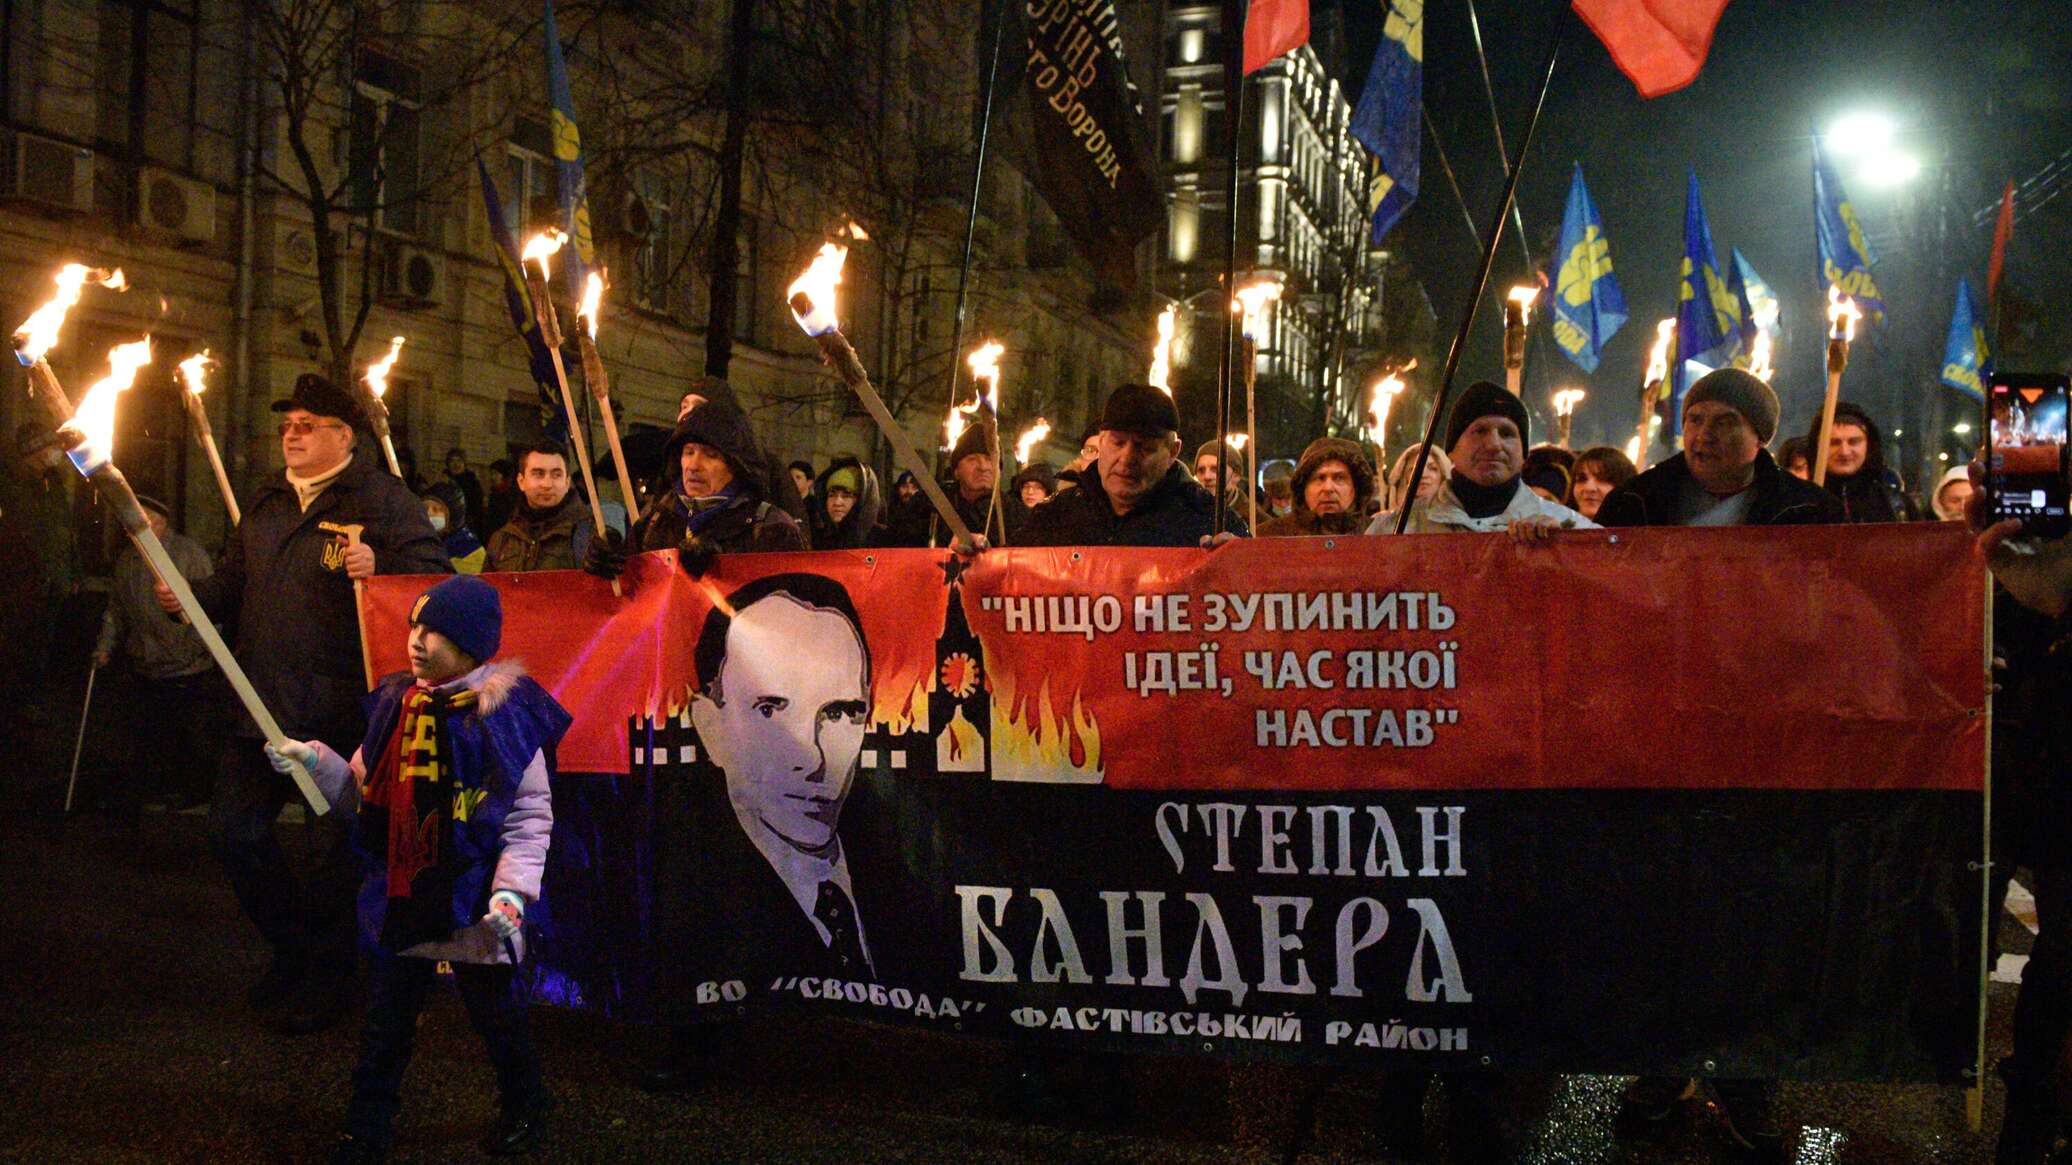 Факельные шествия на украине со свастикой фото